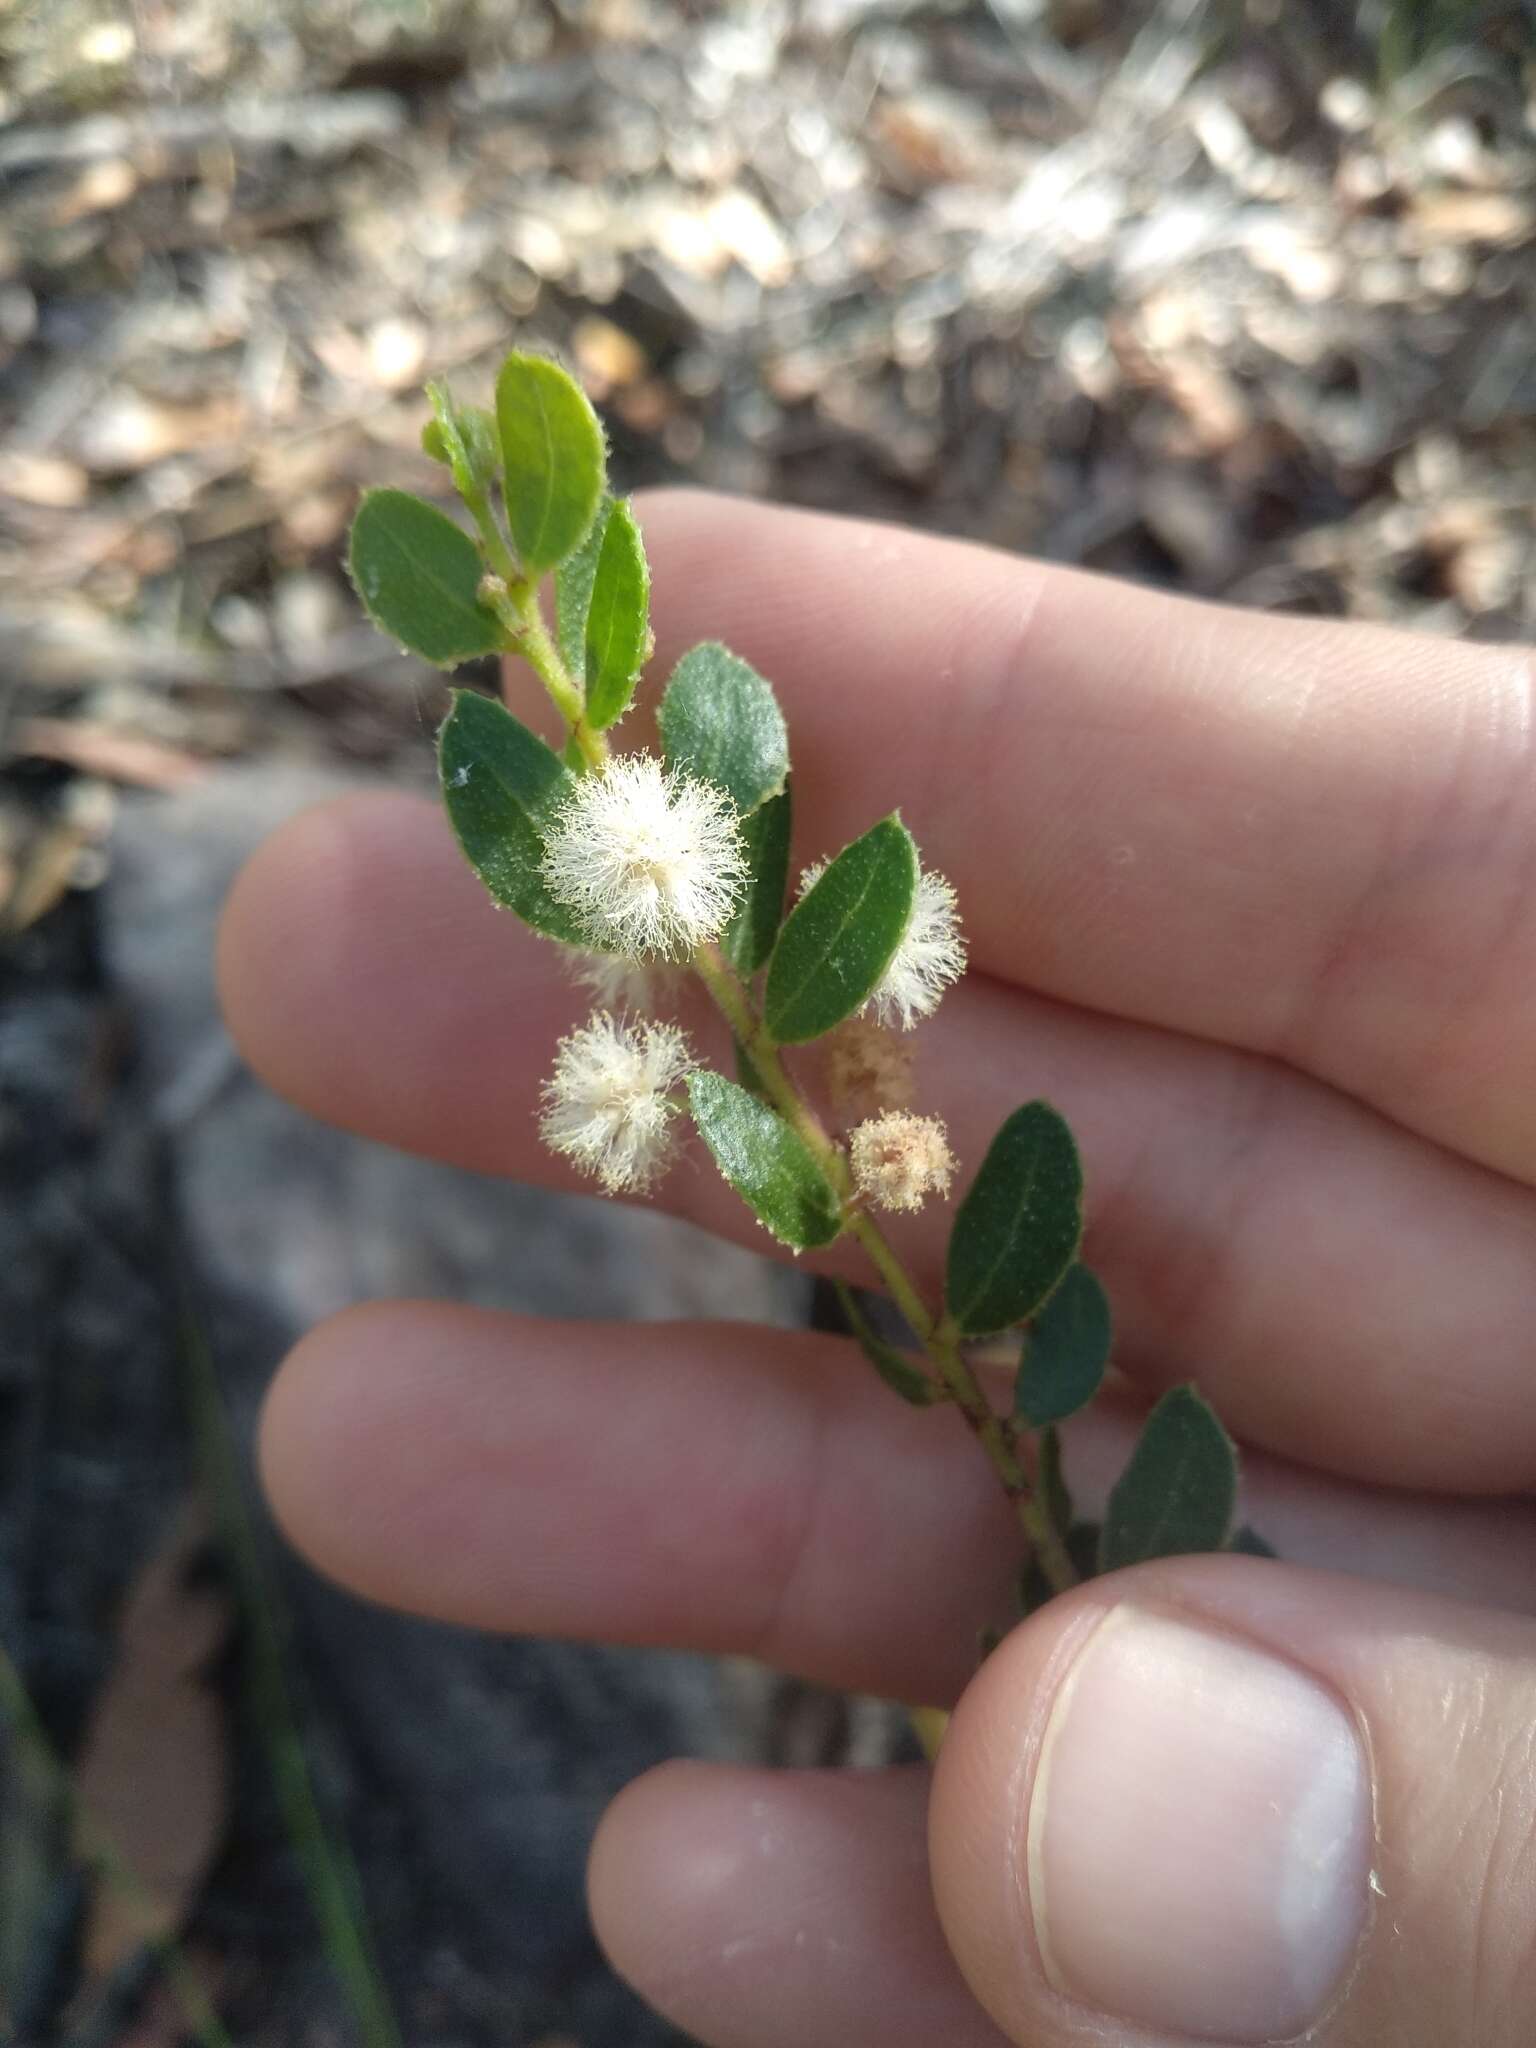 Image of Acacia hispidula (Sm.) Willd.